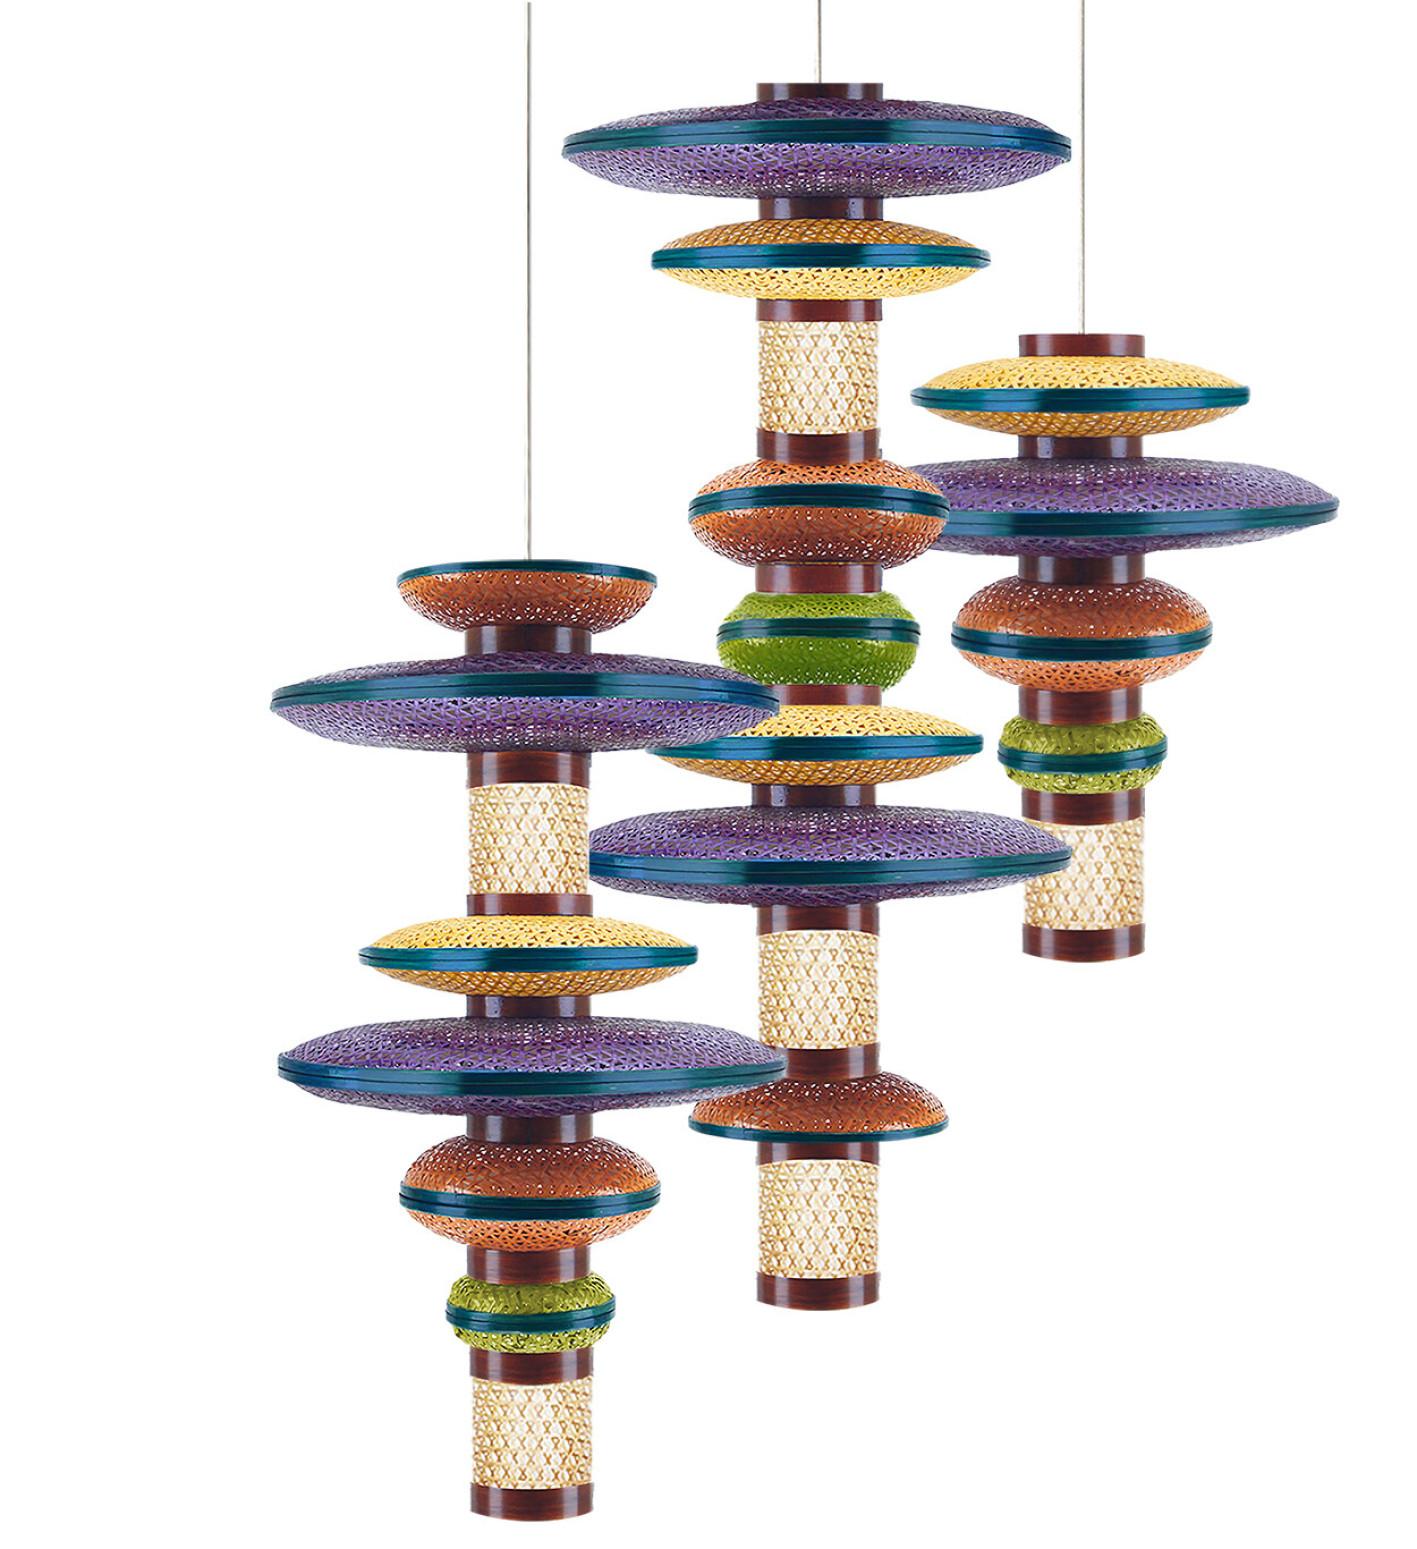 Le lustre en bambou multicolore fait entrer le tressage traditionnel et ancien du bambou dans l'espace intérieur moderne, montrant l'identité visuelle et la fonctionnalité de ce matériau fascinant. Le lustre modulaire en bambou tressé s'inspire de